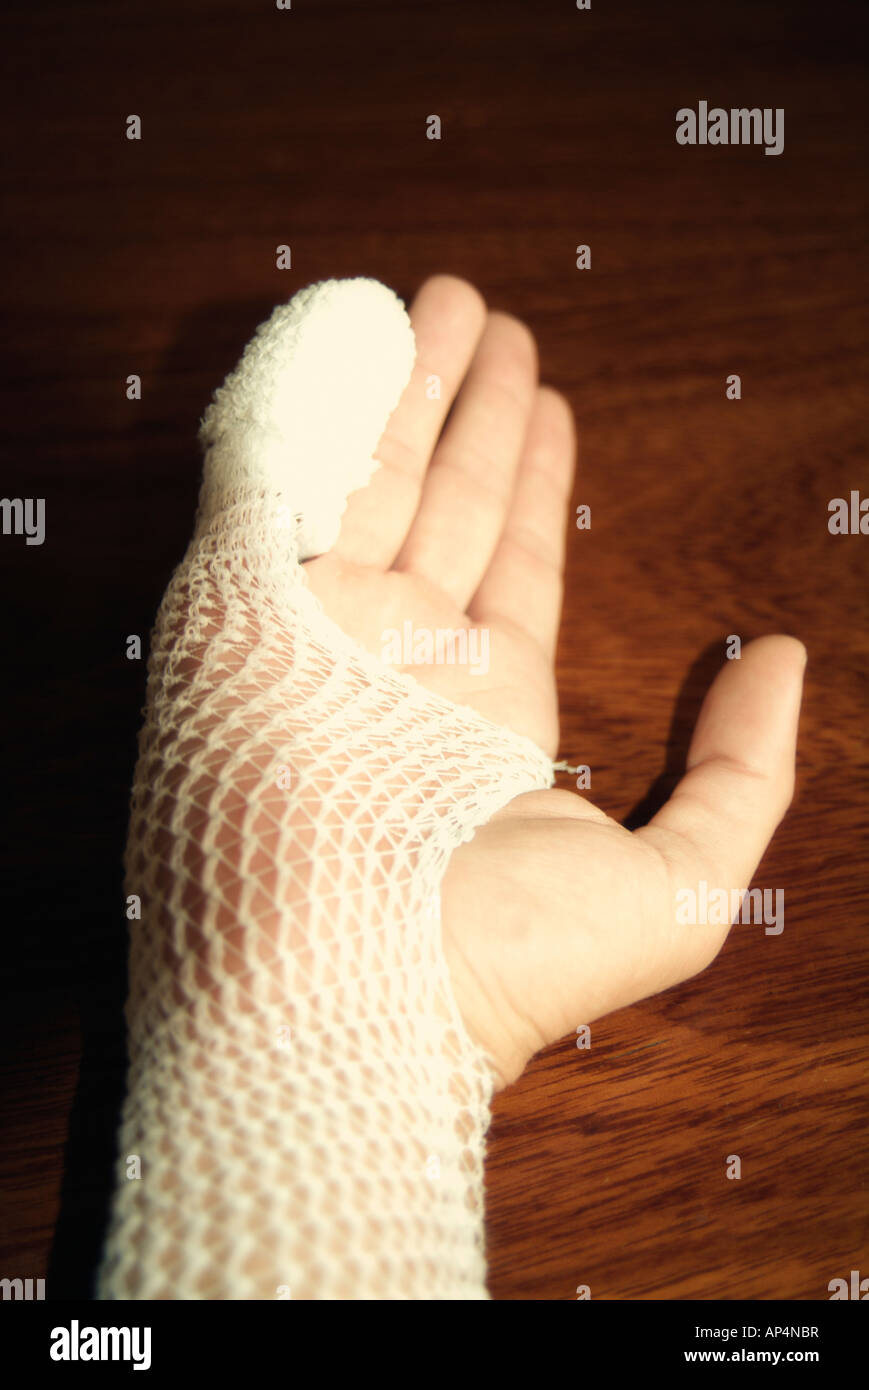 Wounded hand bandaged Stock Photo